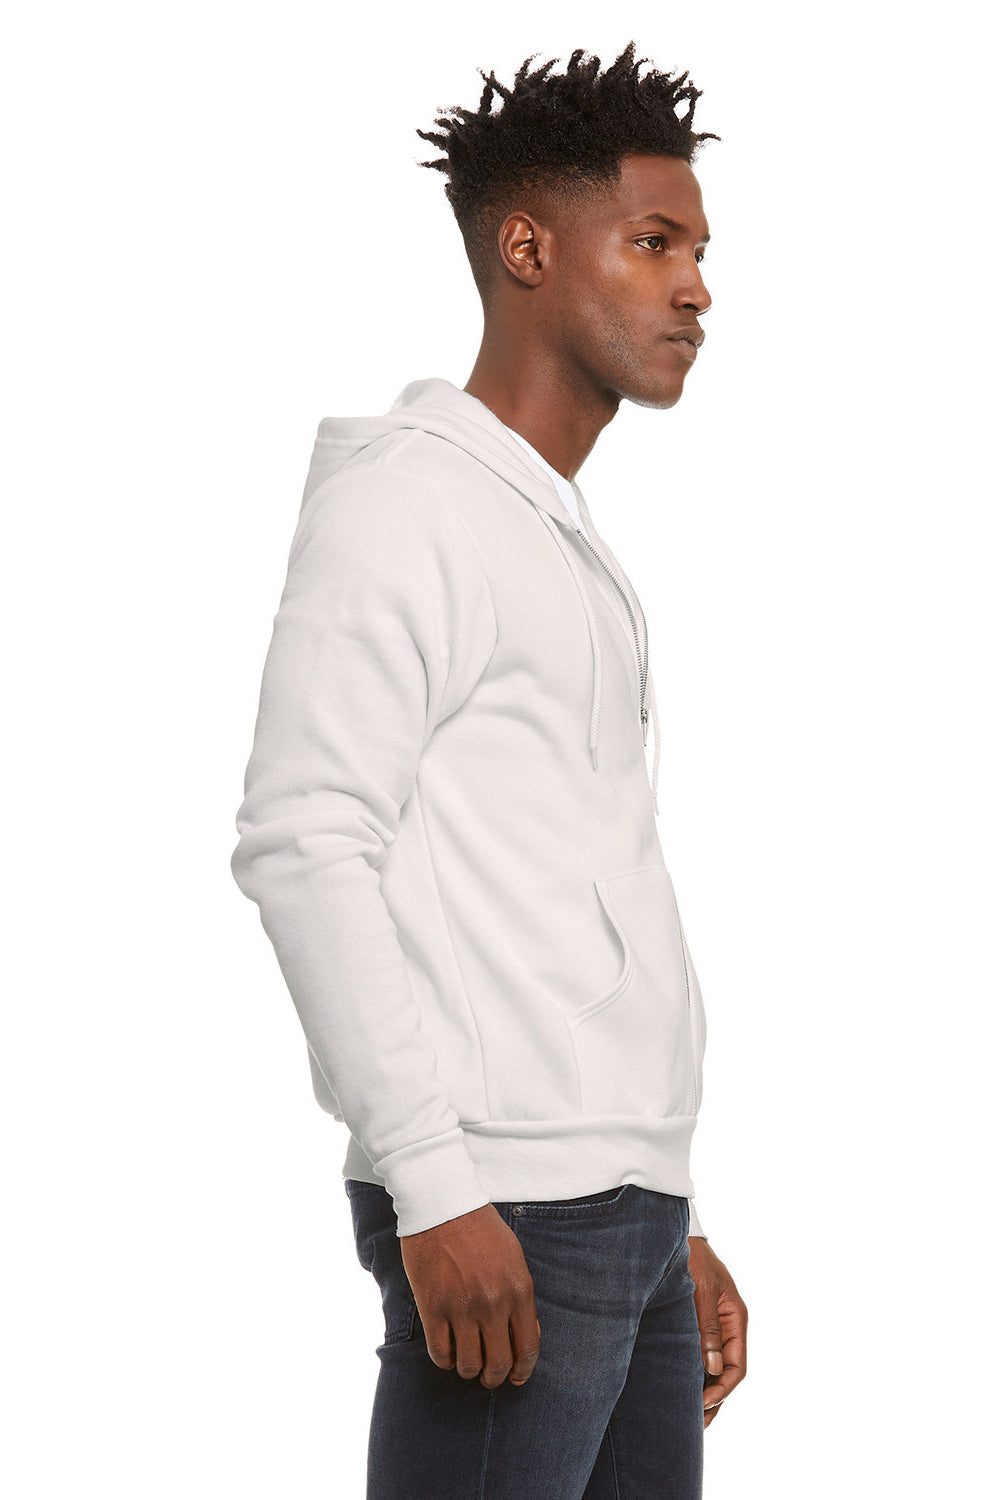 Bella + Canvas BC3739/3739 Mens Fleece Full Zip Hooded Sweatshirt Hoodie Vintage White Model Side